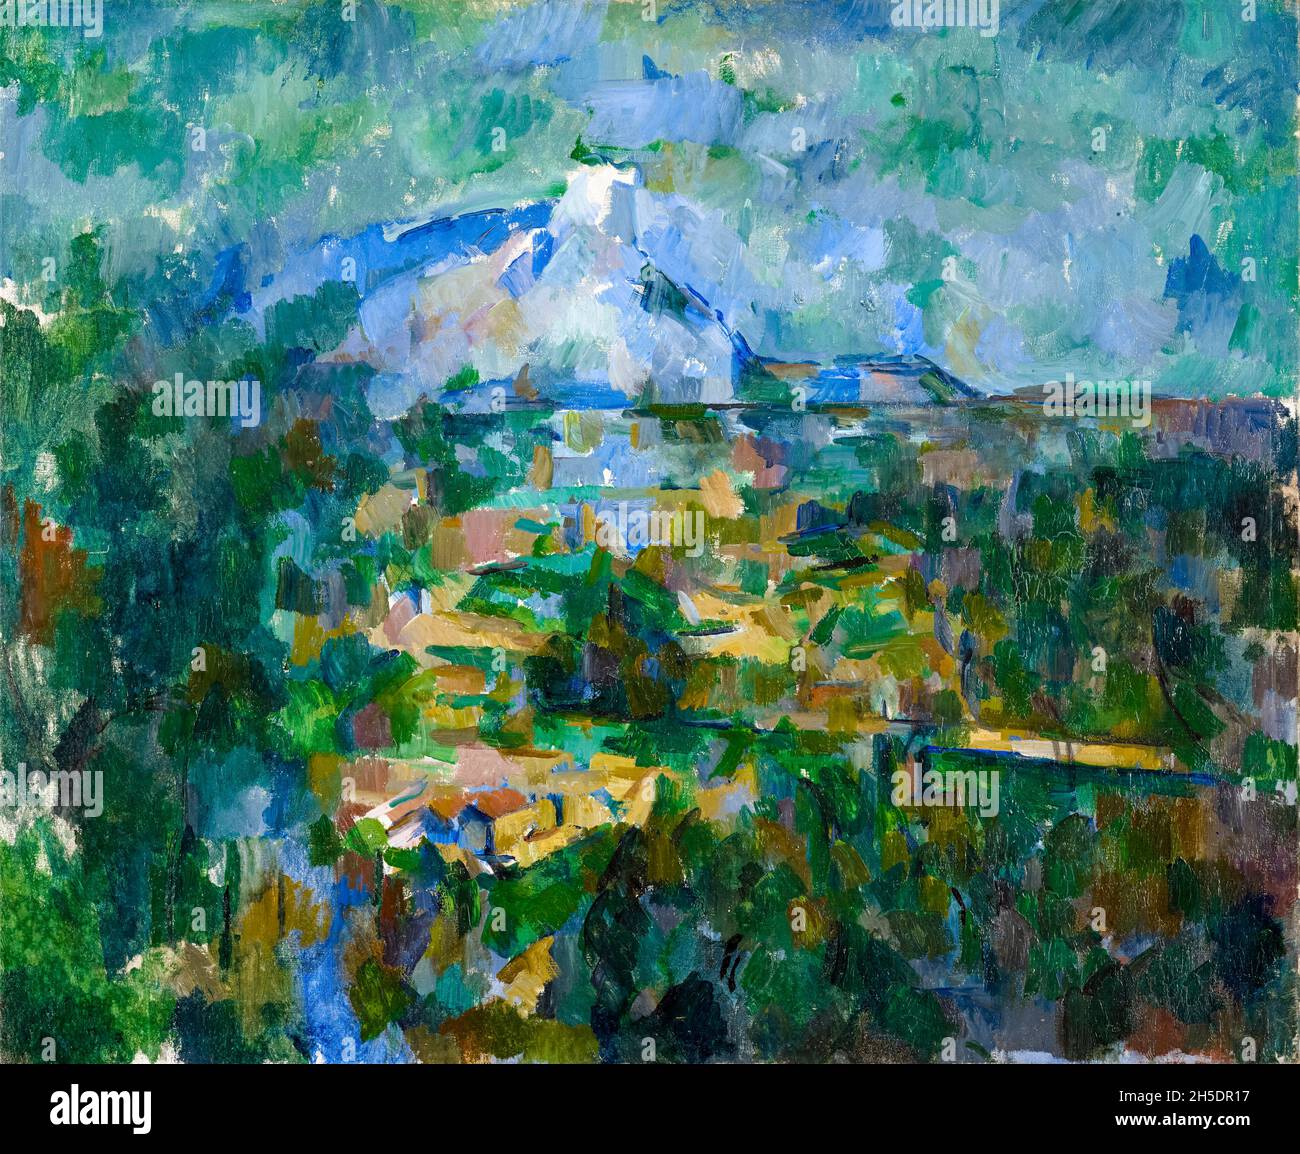 Paul Cézanne, Mont Sainte-victoire, vue de Lauves, peinture paysagère, 1904-1906 Banque D'Images